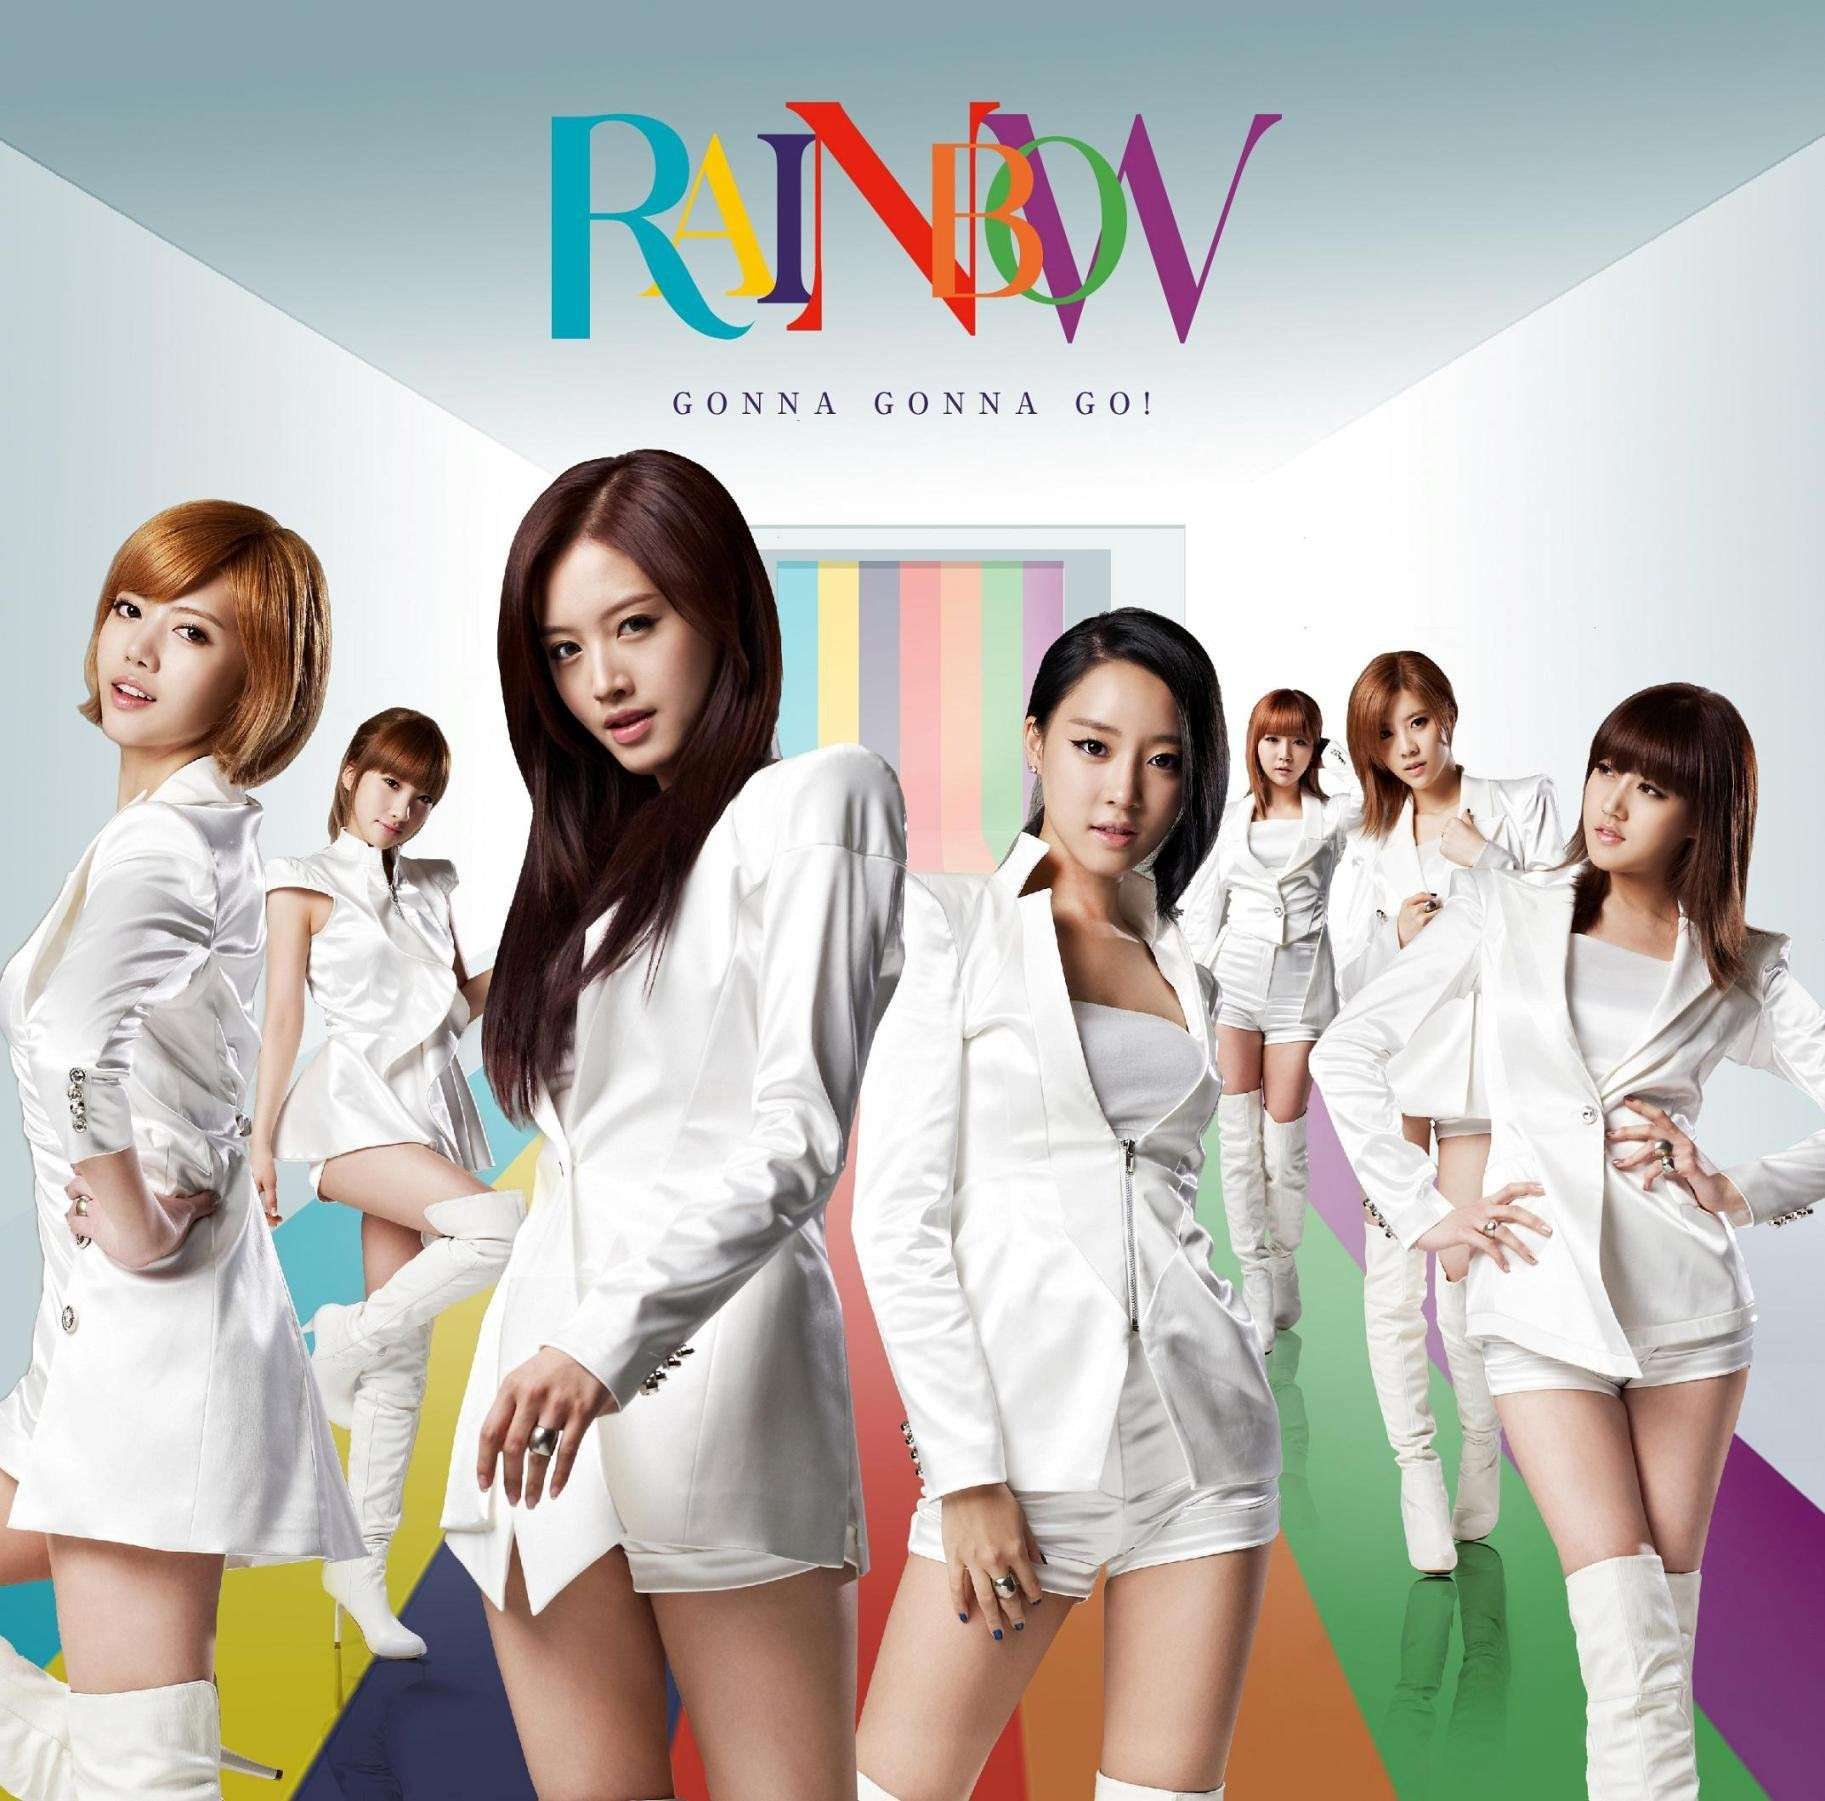 [17.02.2012][News] Rainbow chính thức thông báo về single tiếng Nhật thứ 3 - "Gonna Gonna Go!" 1cd10